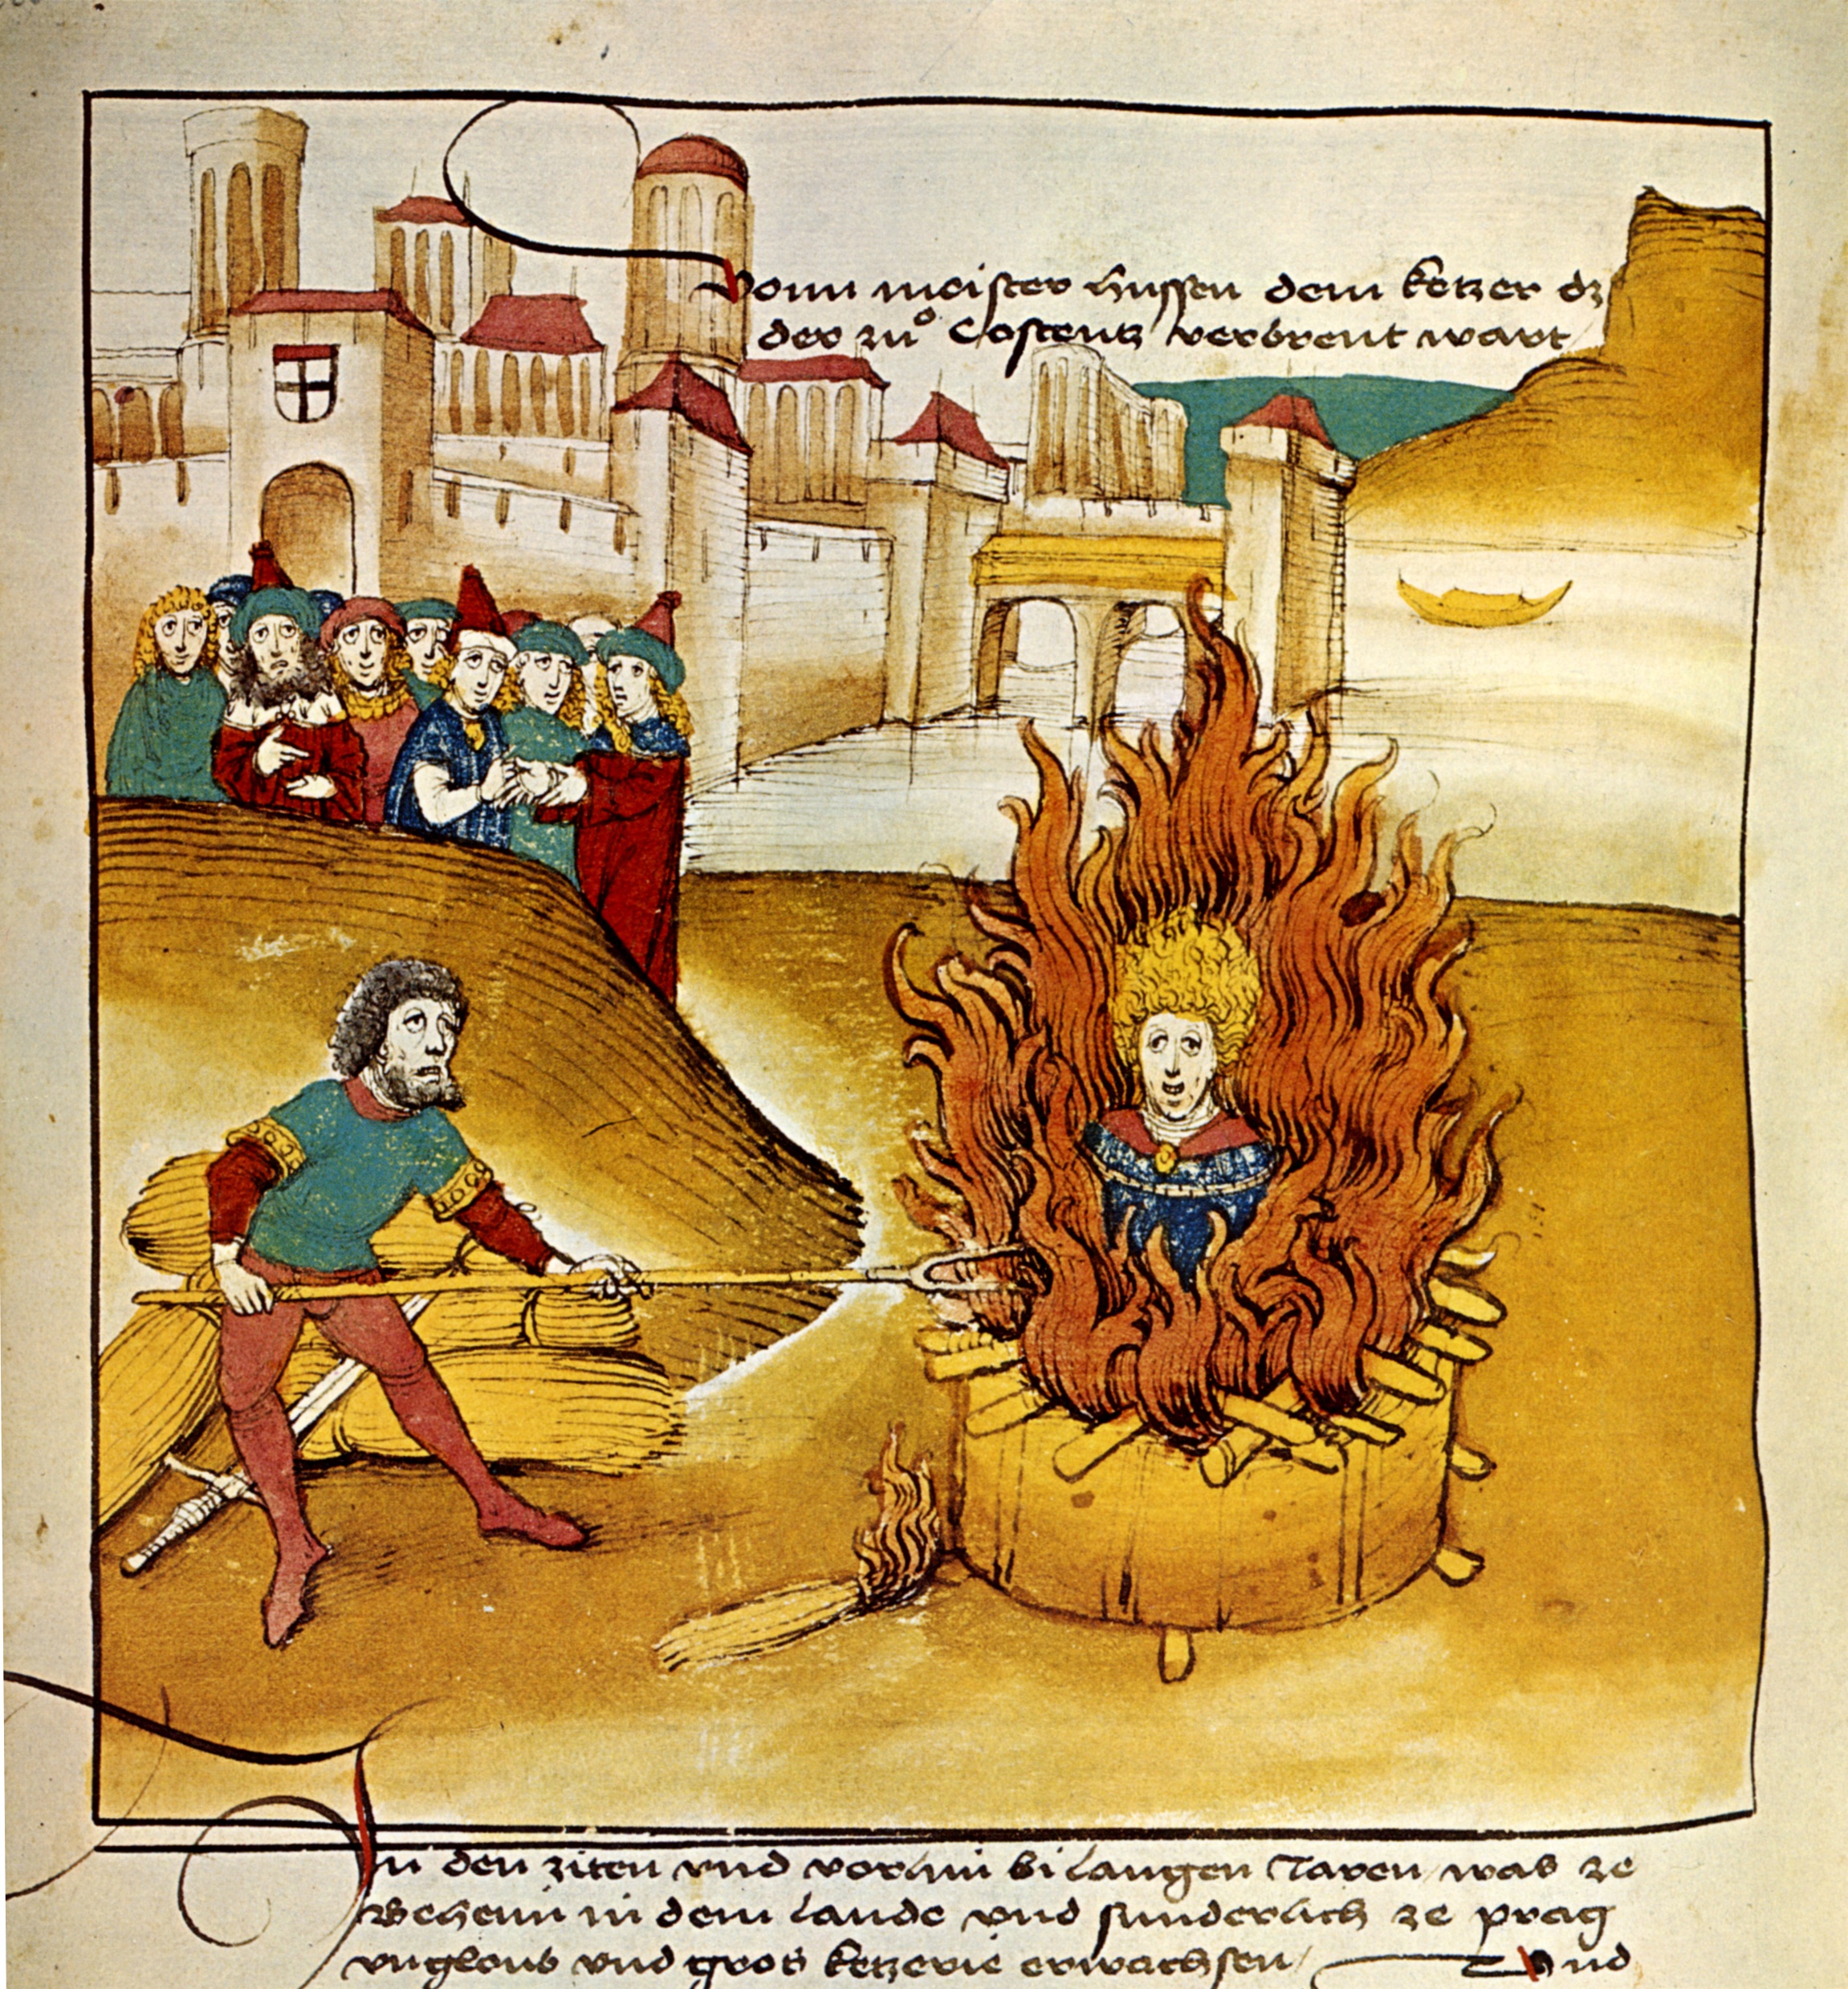 1415 Jan Hus: Burning Man